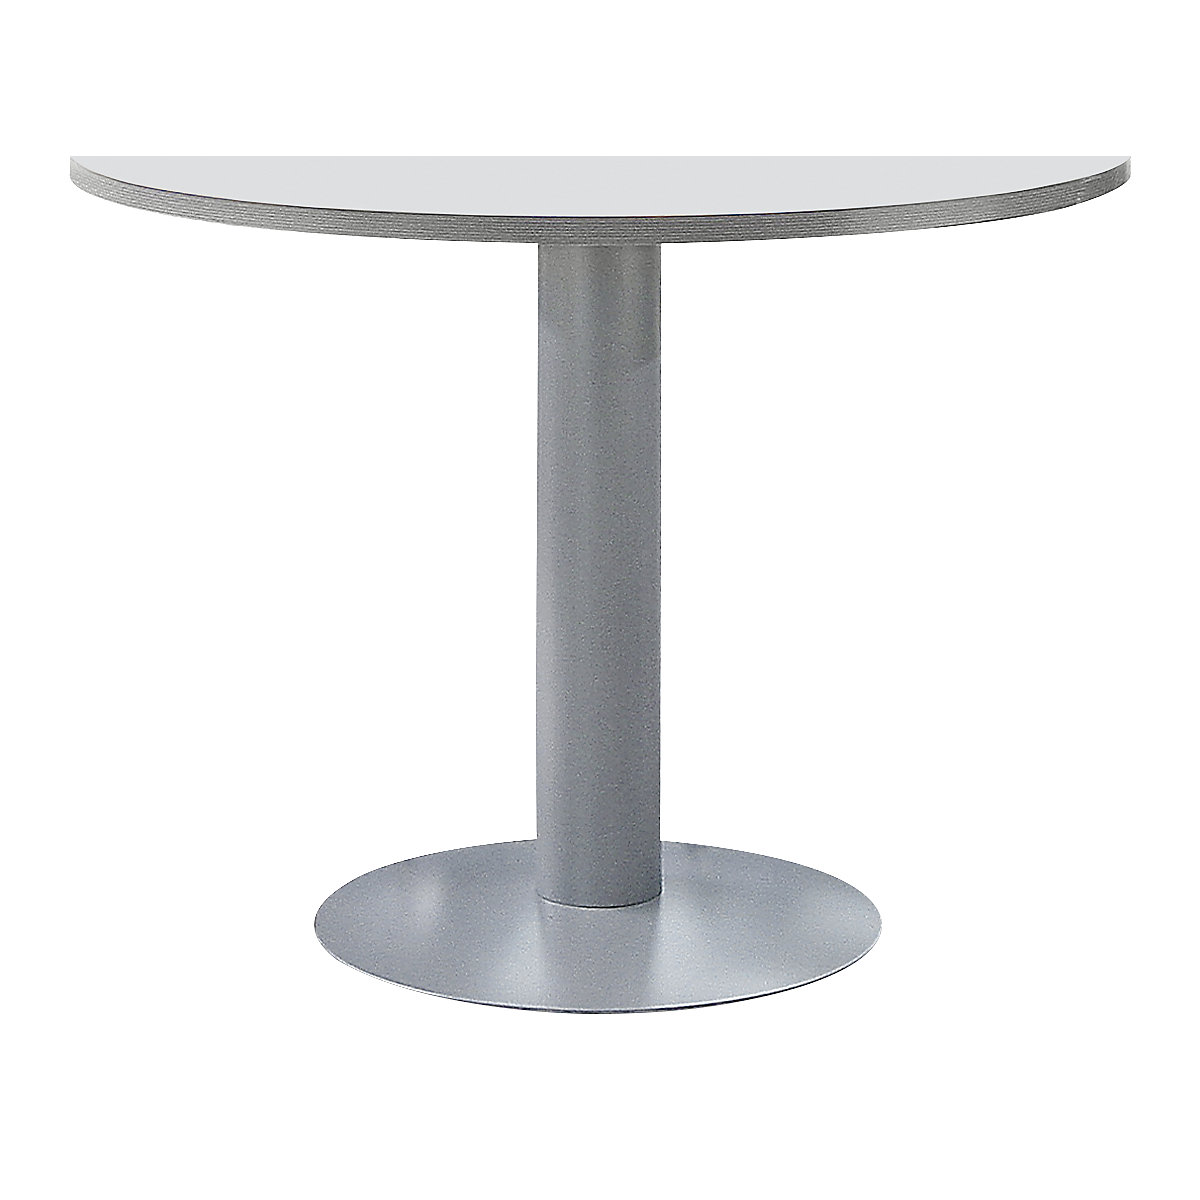 Pedestal table, Ø 1000 mm, height 720 mm, light grey / aluminium colour-3